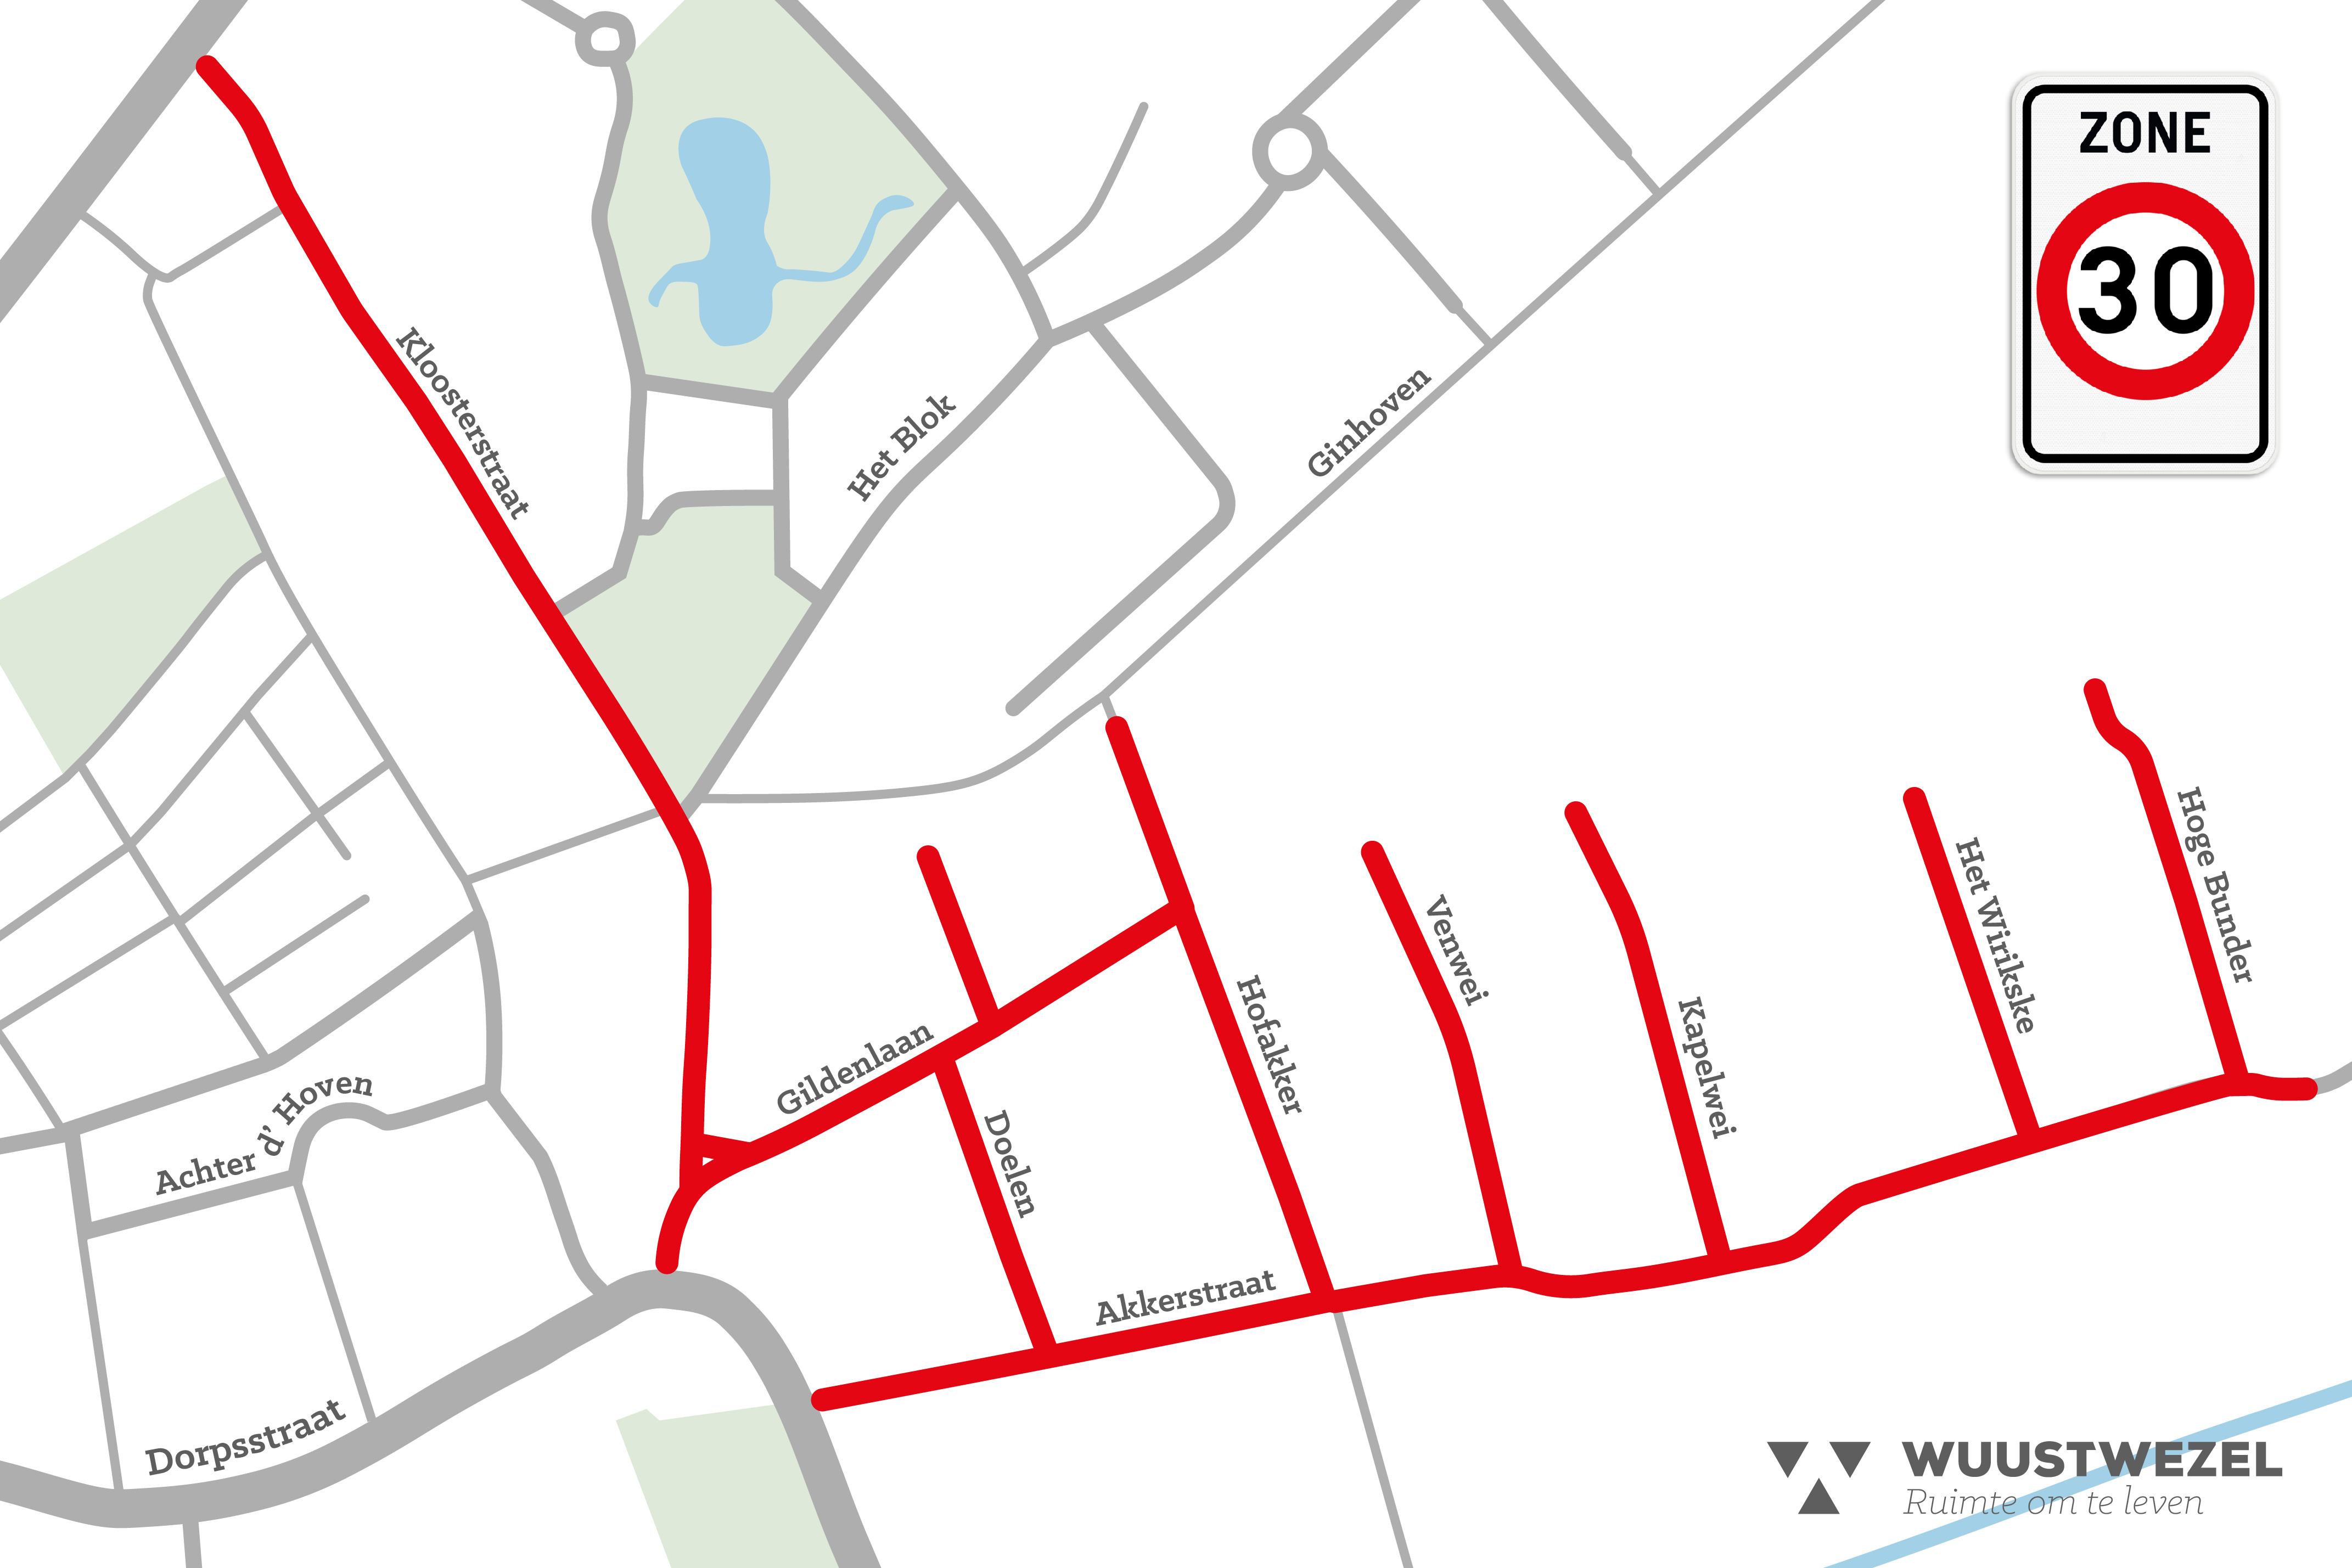 plattegrond van de wijk Akkerstraat - Hofakker met daarop de straten die zone 30 zijn geworden